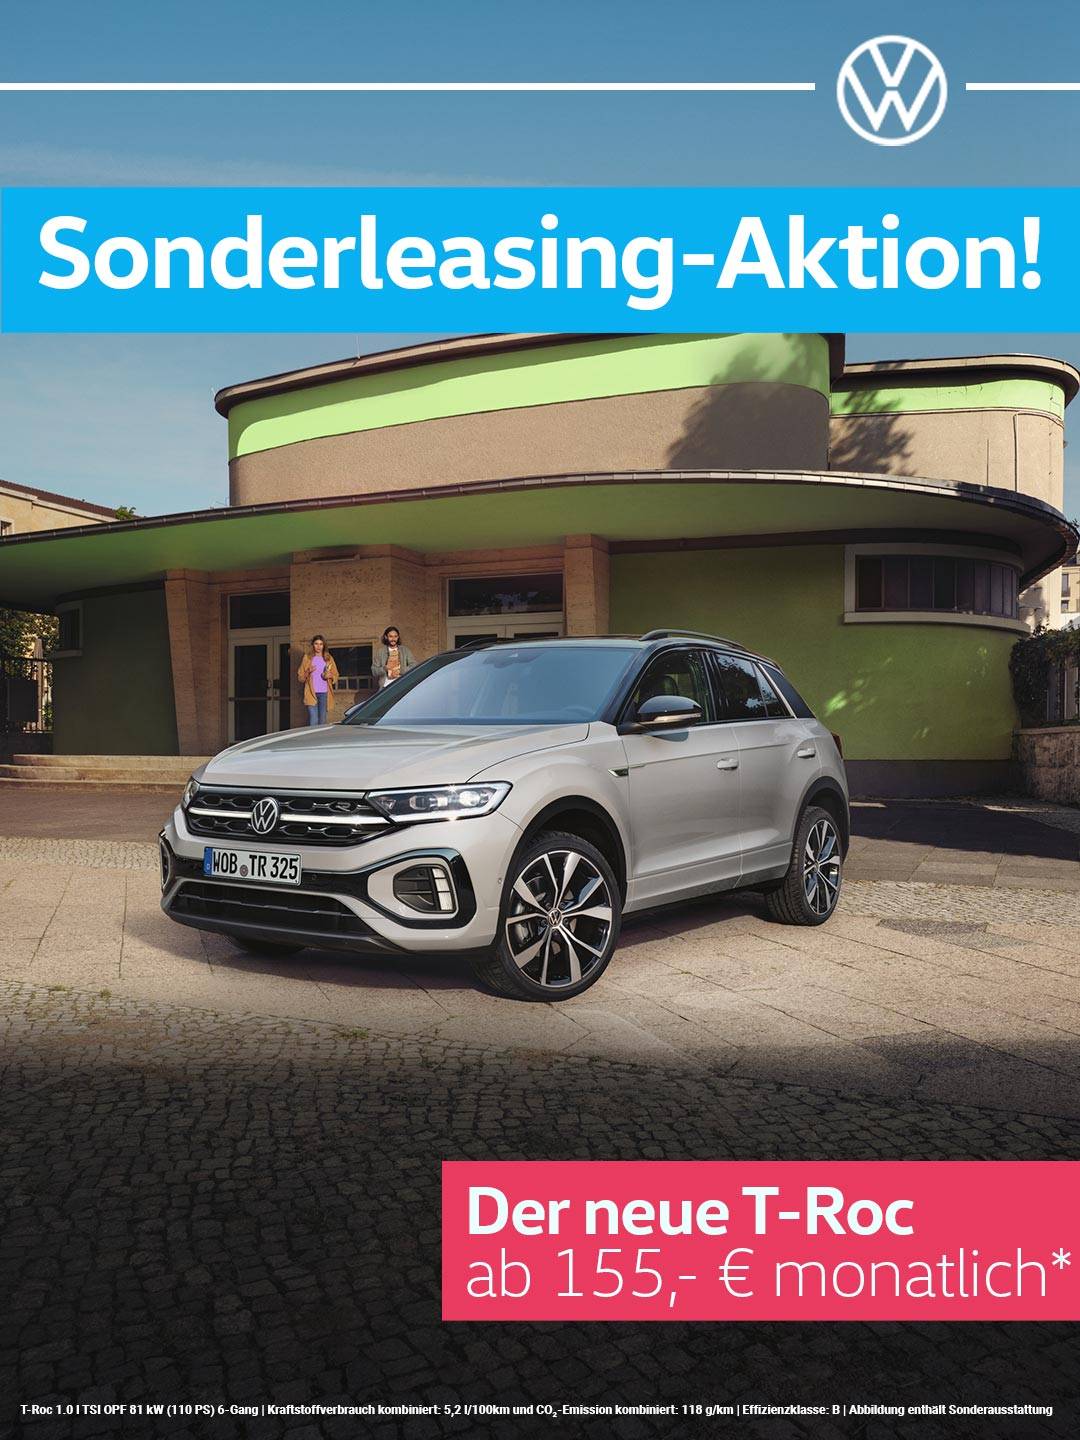 Privatleasing-Angebot: Der T-Roc von VW!